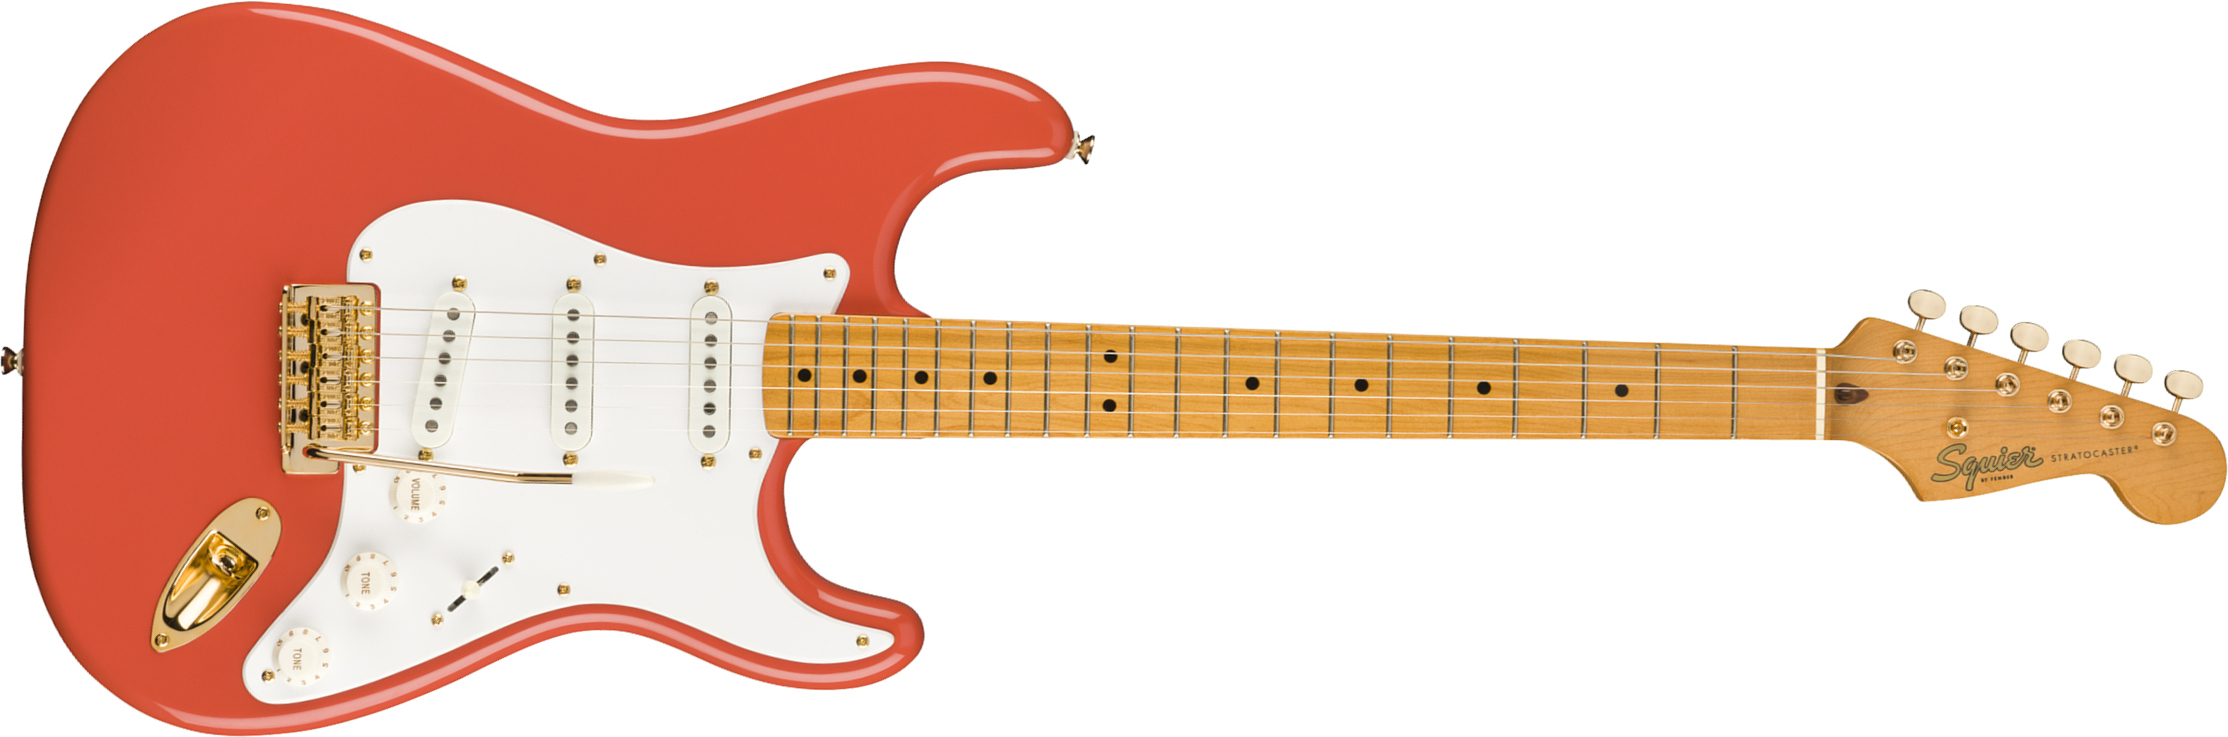 Squier Strat Classic Vibe '50s Fsr Ltd Mn - Fiesta Red With Gold Hardware - Elektrische gitaar in Str-vorm - Main picture